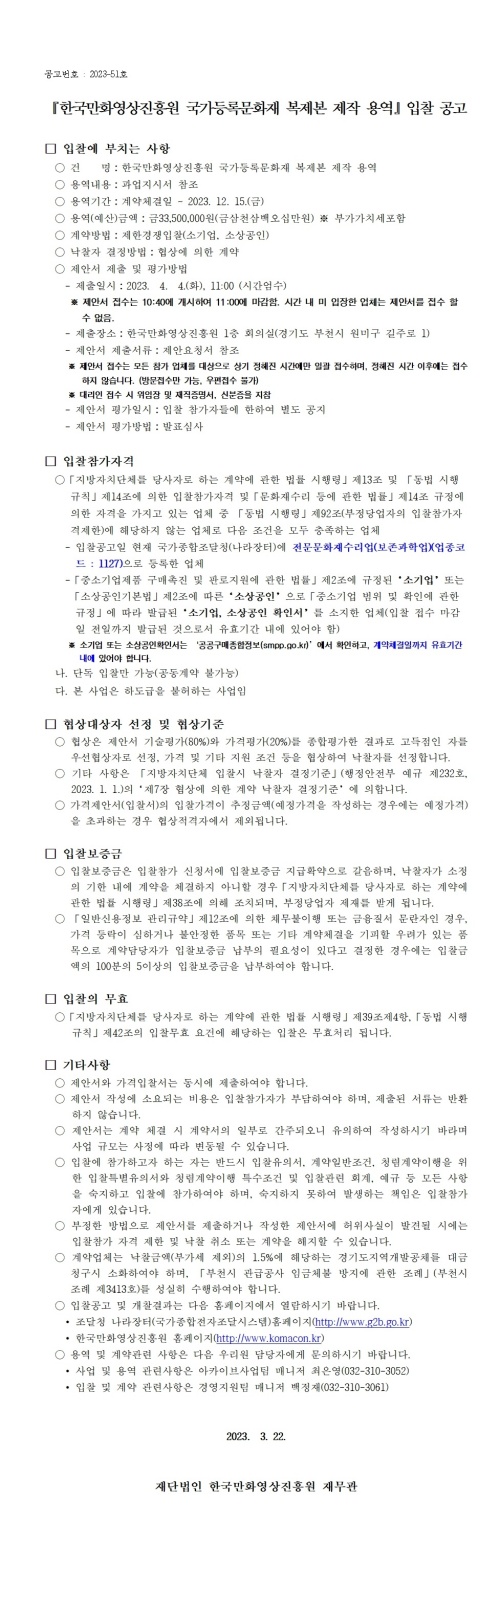 『한국만화영상진흥원 국가등록문화재 복제본 제작 용역』 입찰 공고